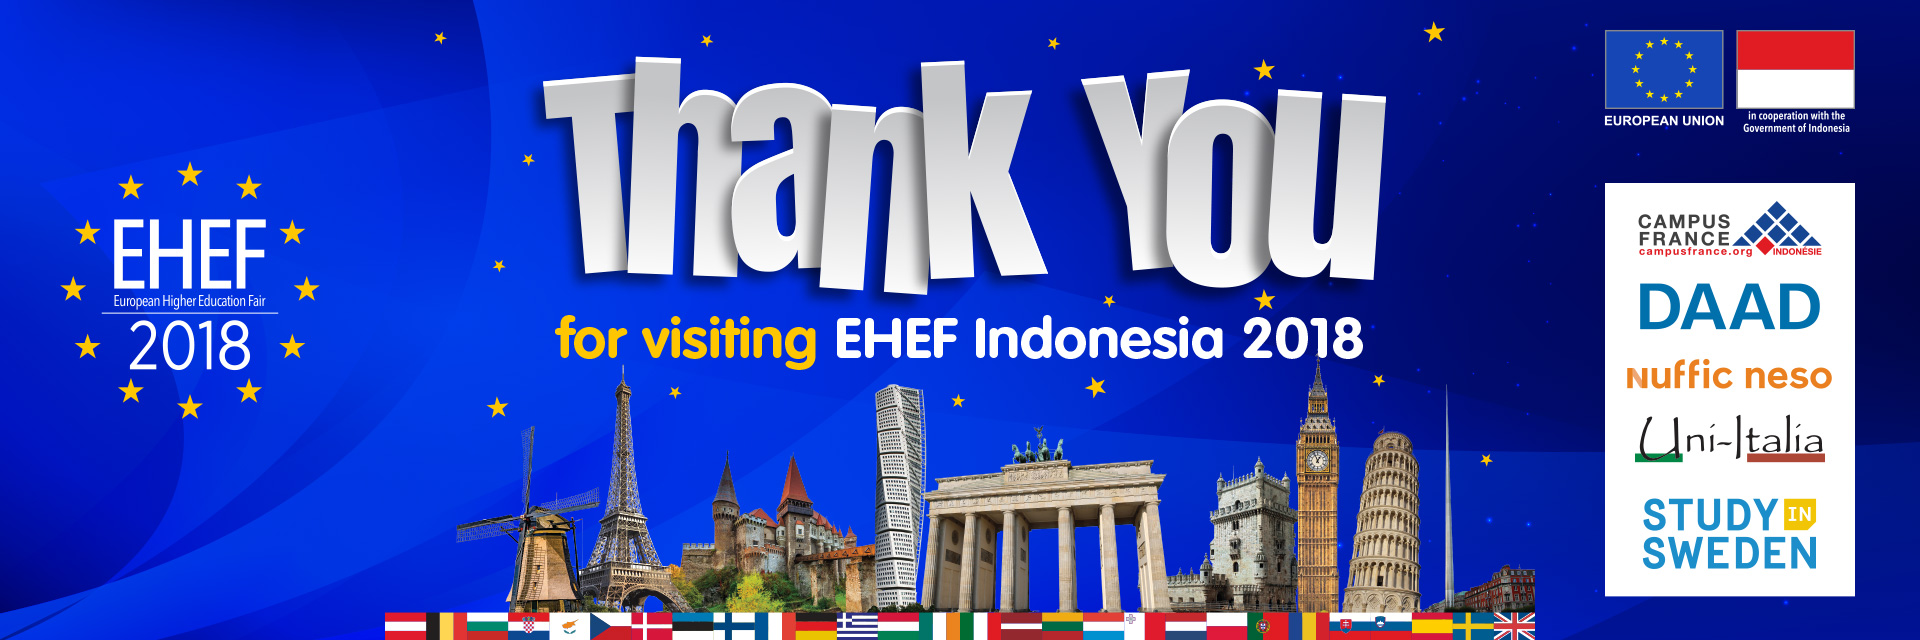 EHEF 2018 Sukses Menjaring Minat 18 Ribu Pelajar Indonesia untuk Kuliah di Eropa